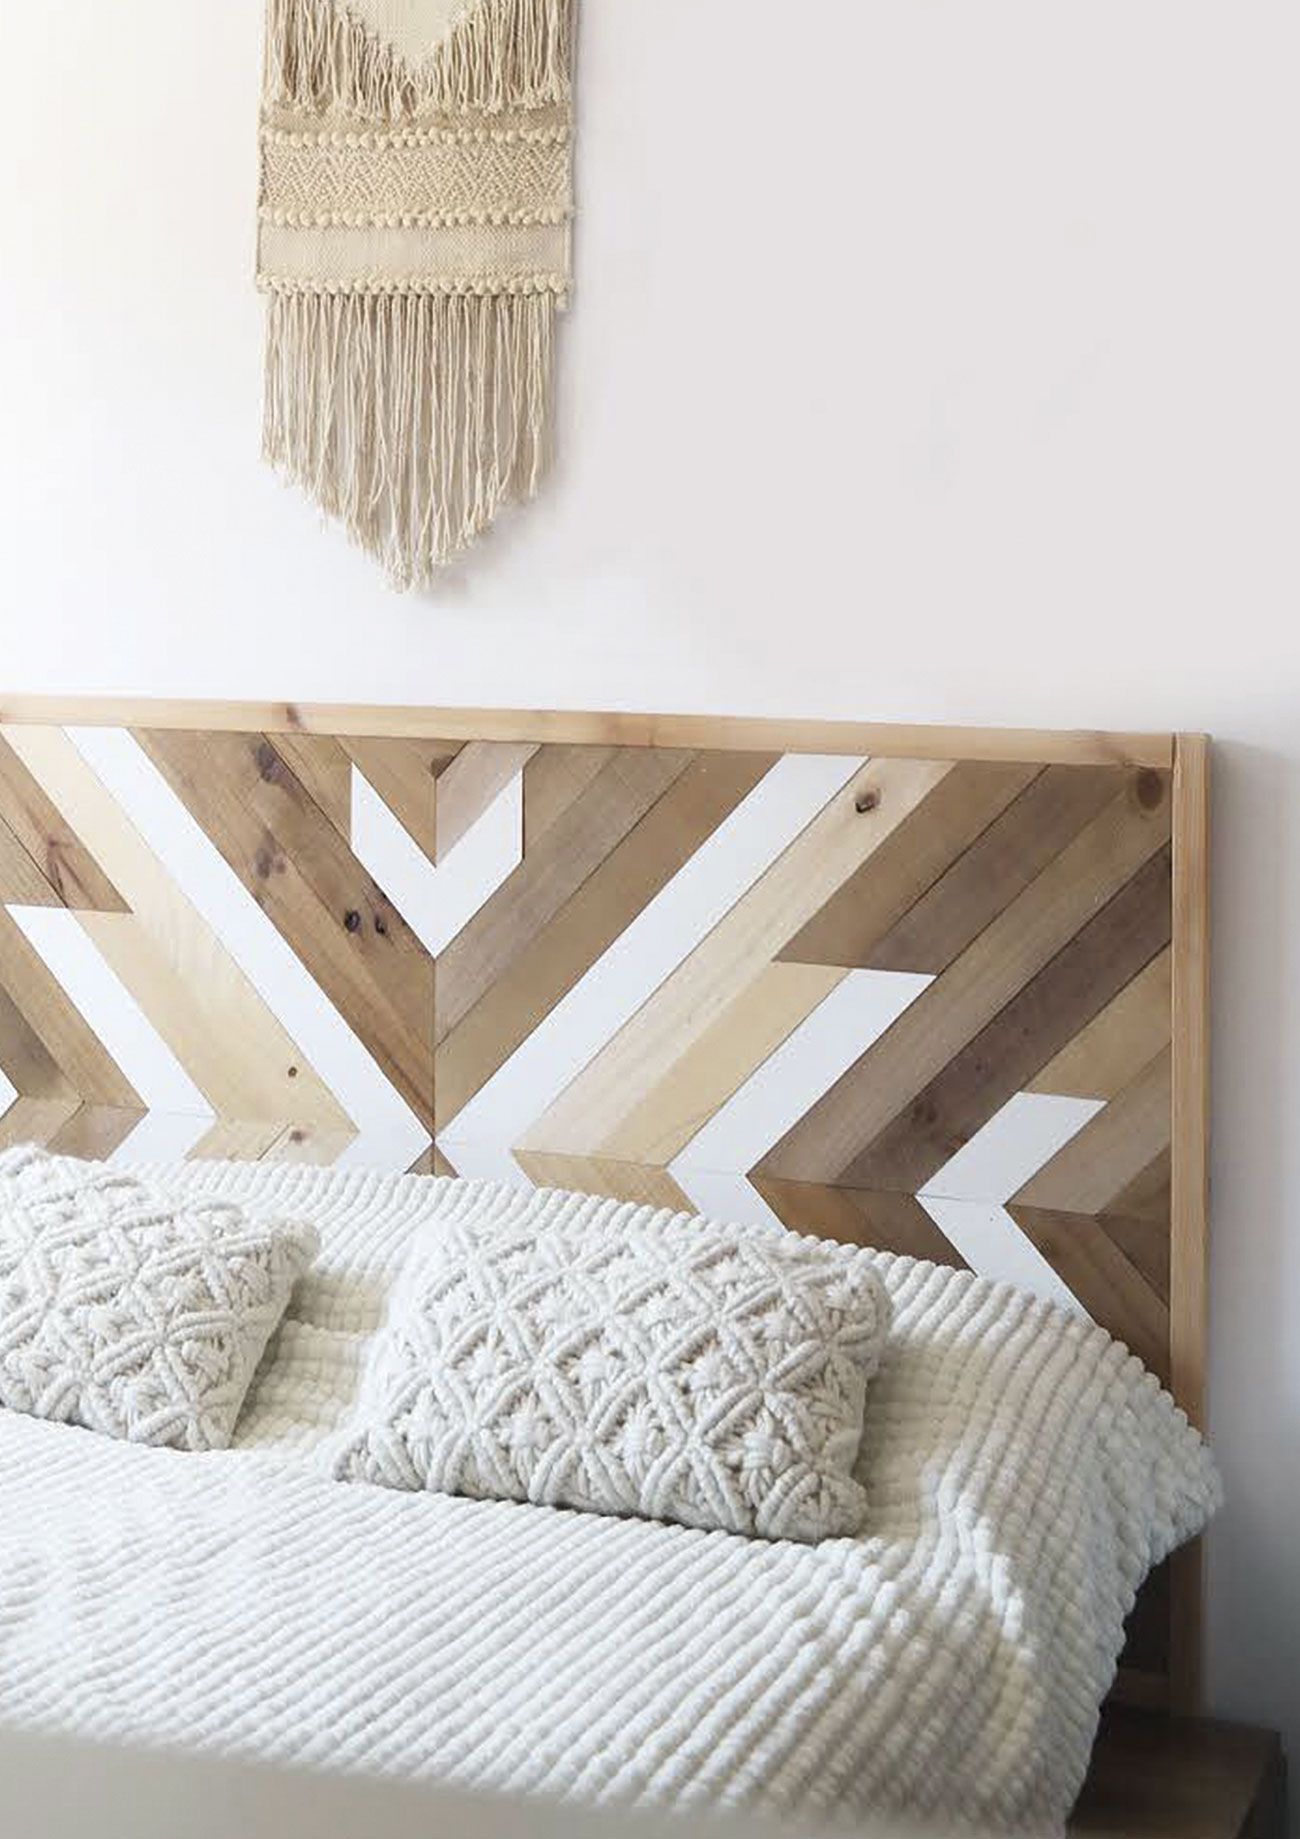 frotis Esperar algo Persona australiana Ideas para decorar el cabecero de la cama - Dormitorios